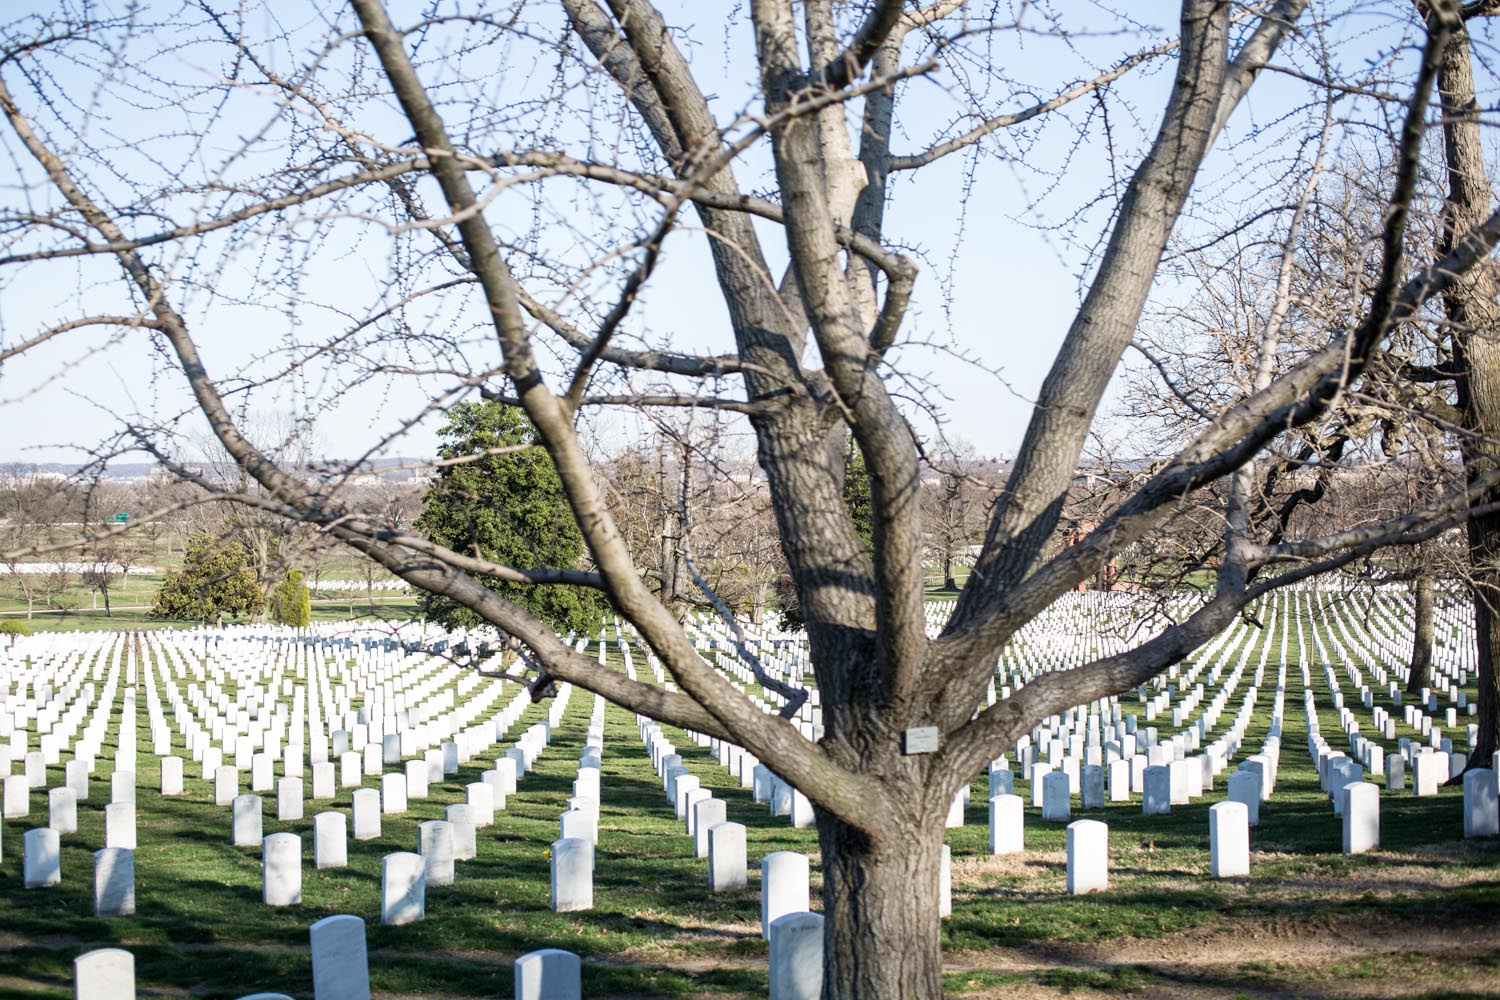 Arlington National Cemetery